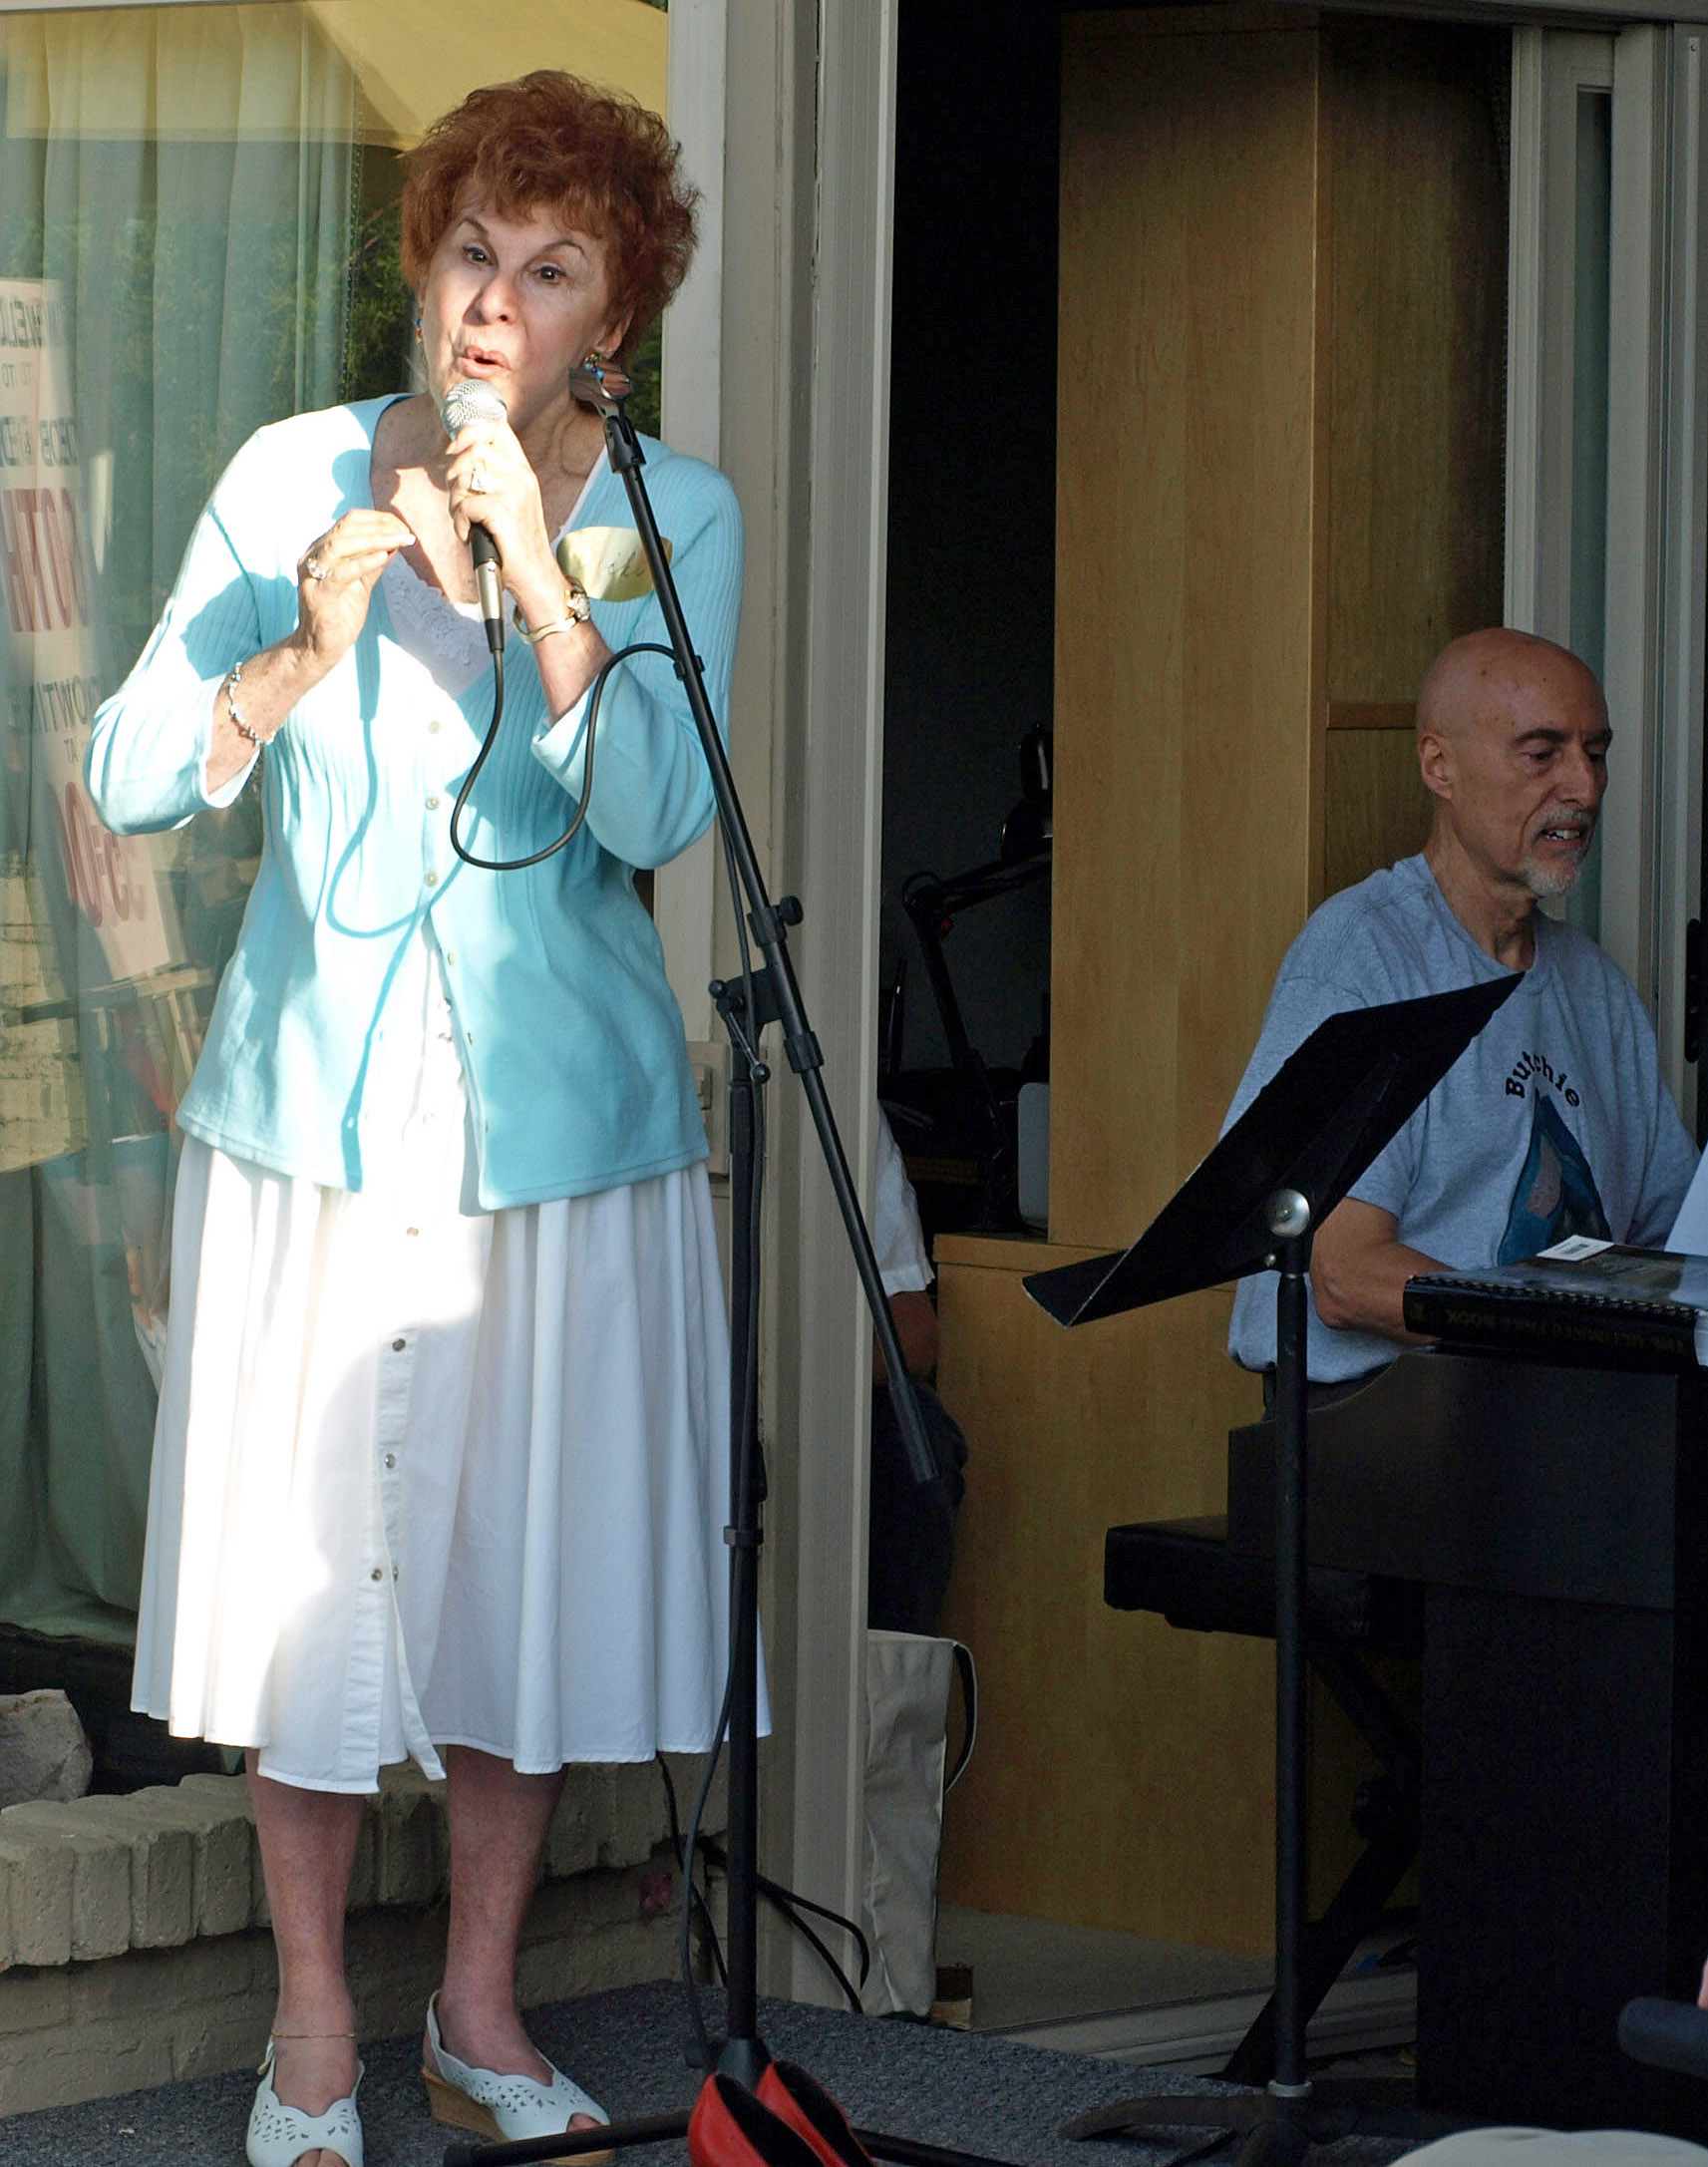 Vicki singing at the party, 2009